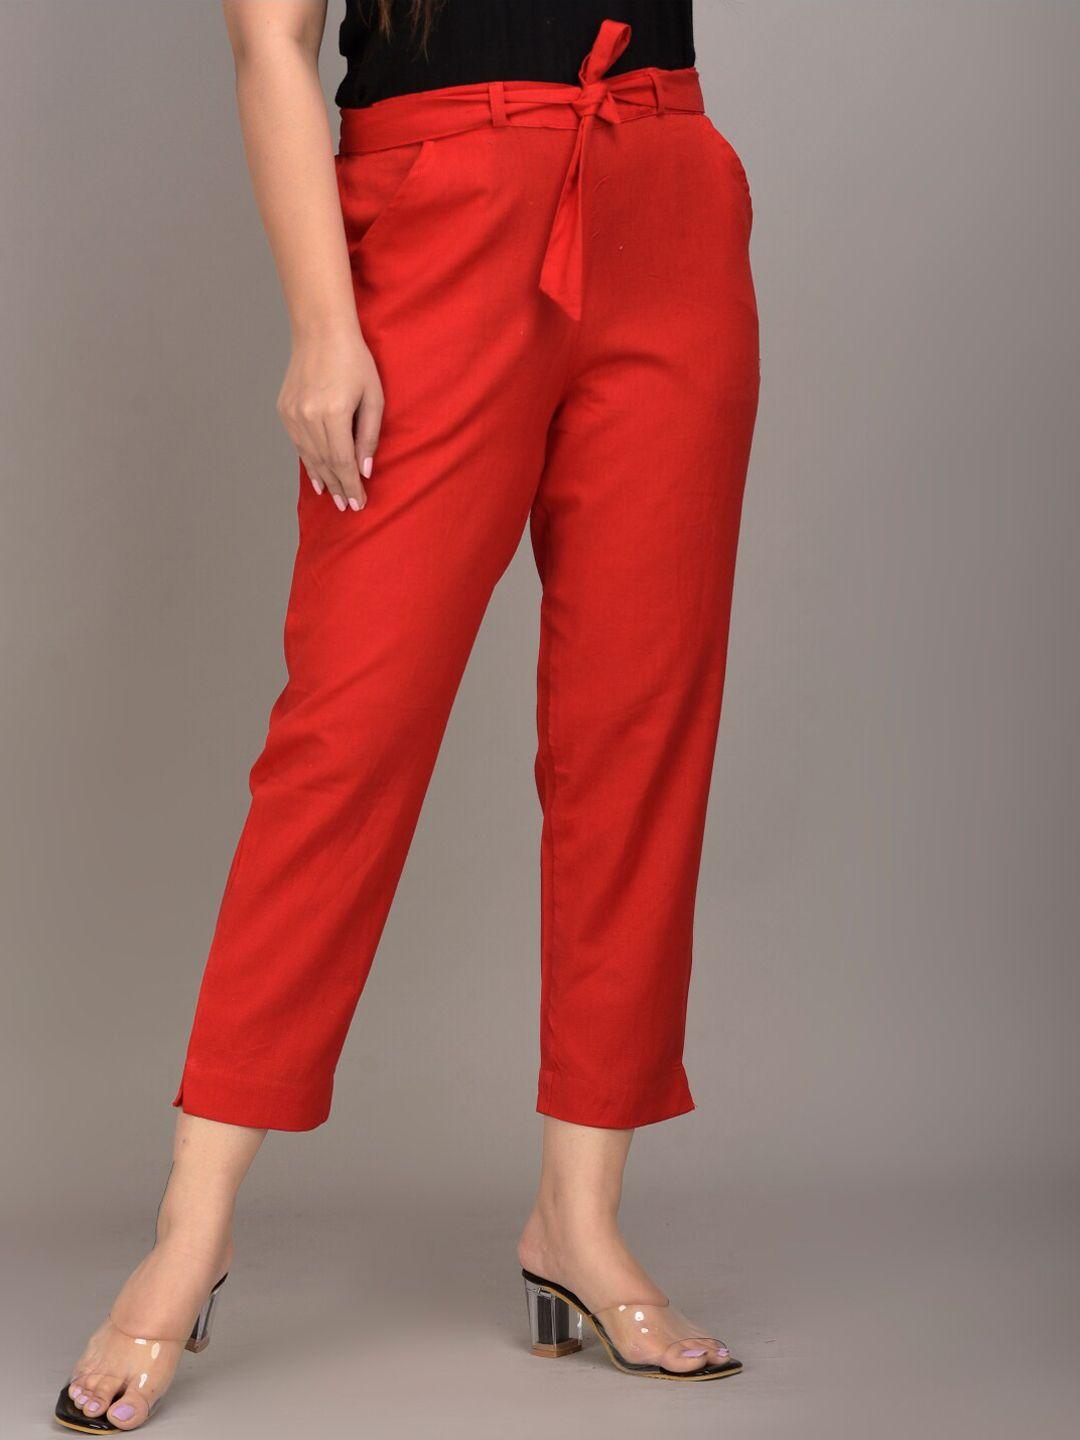 iqraar women red slim fit trousers